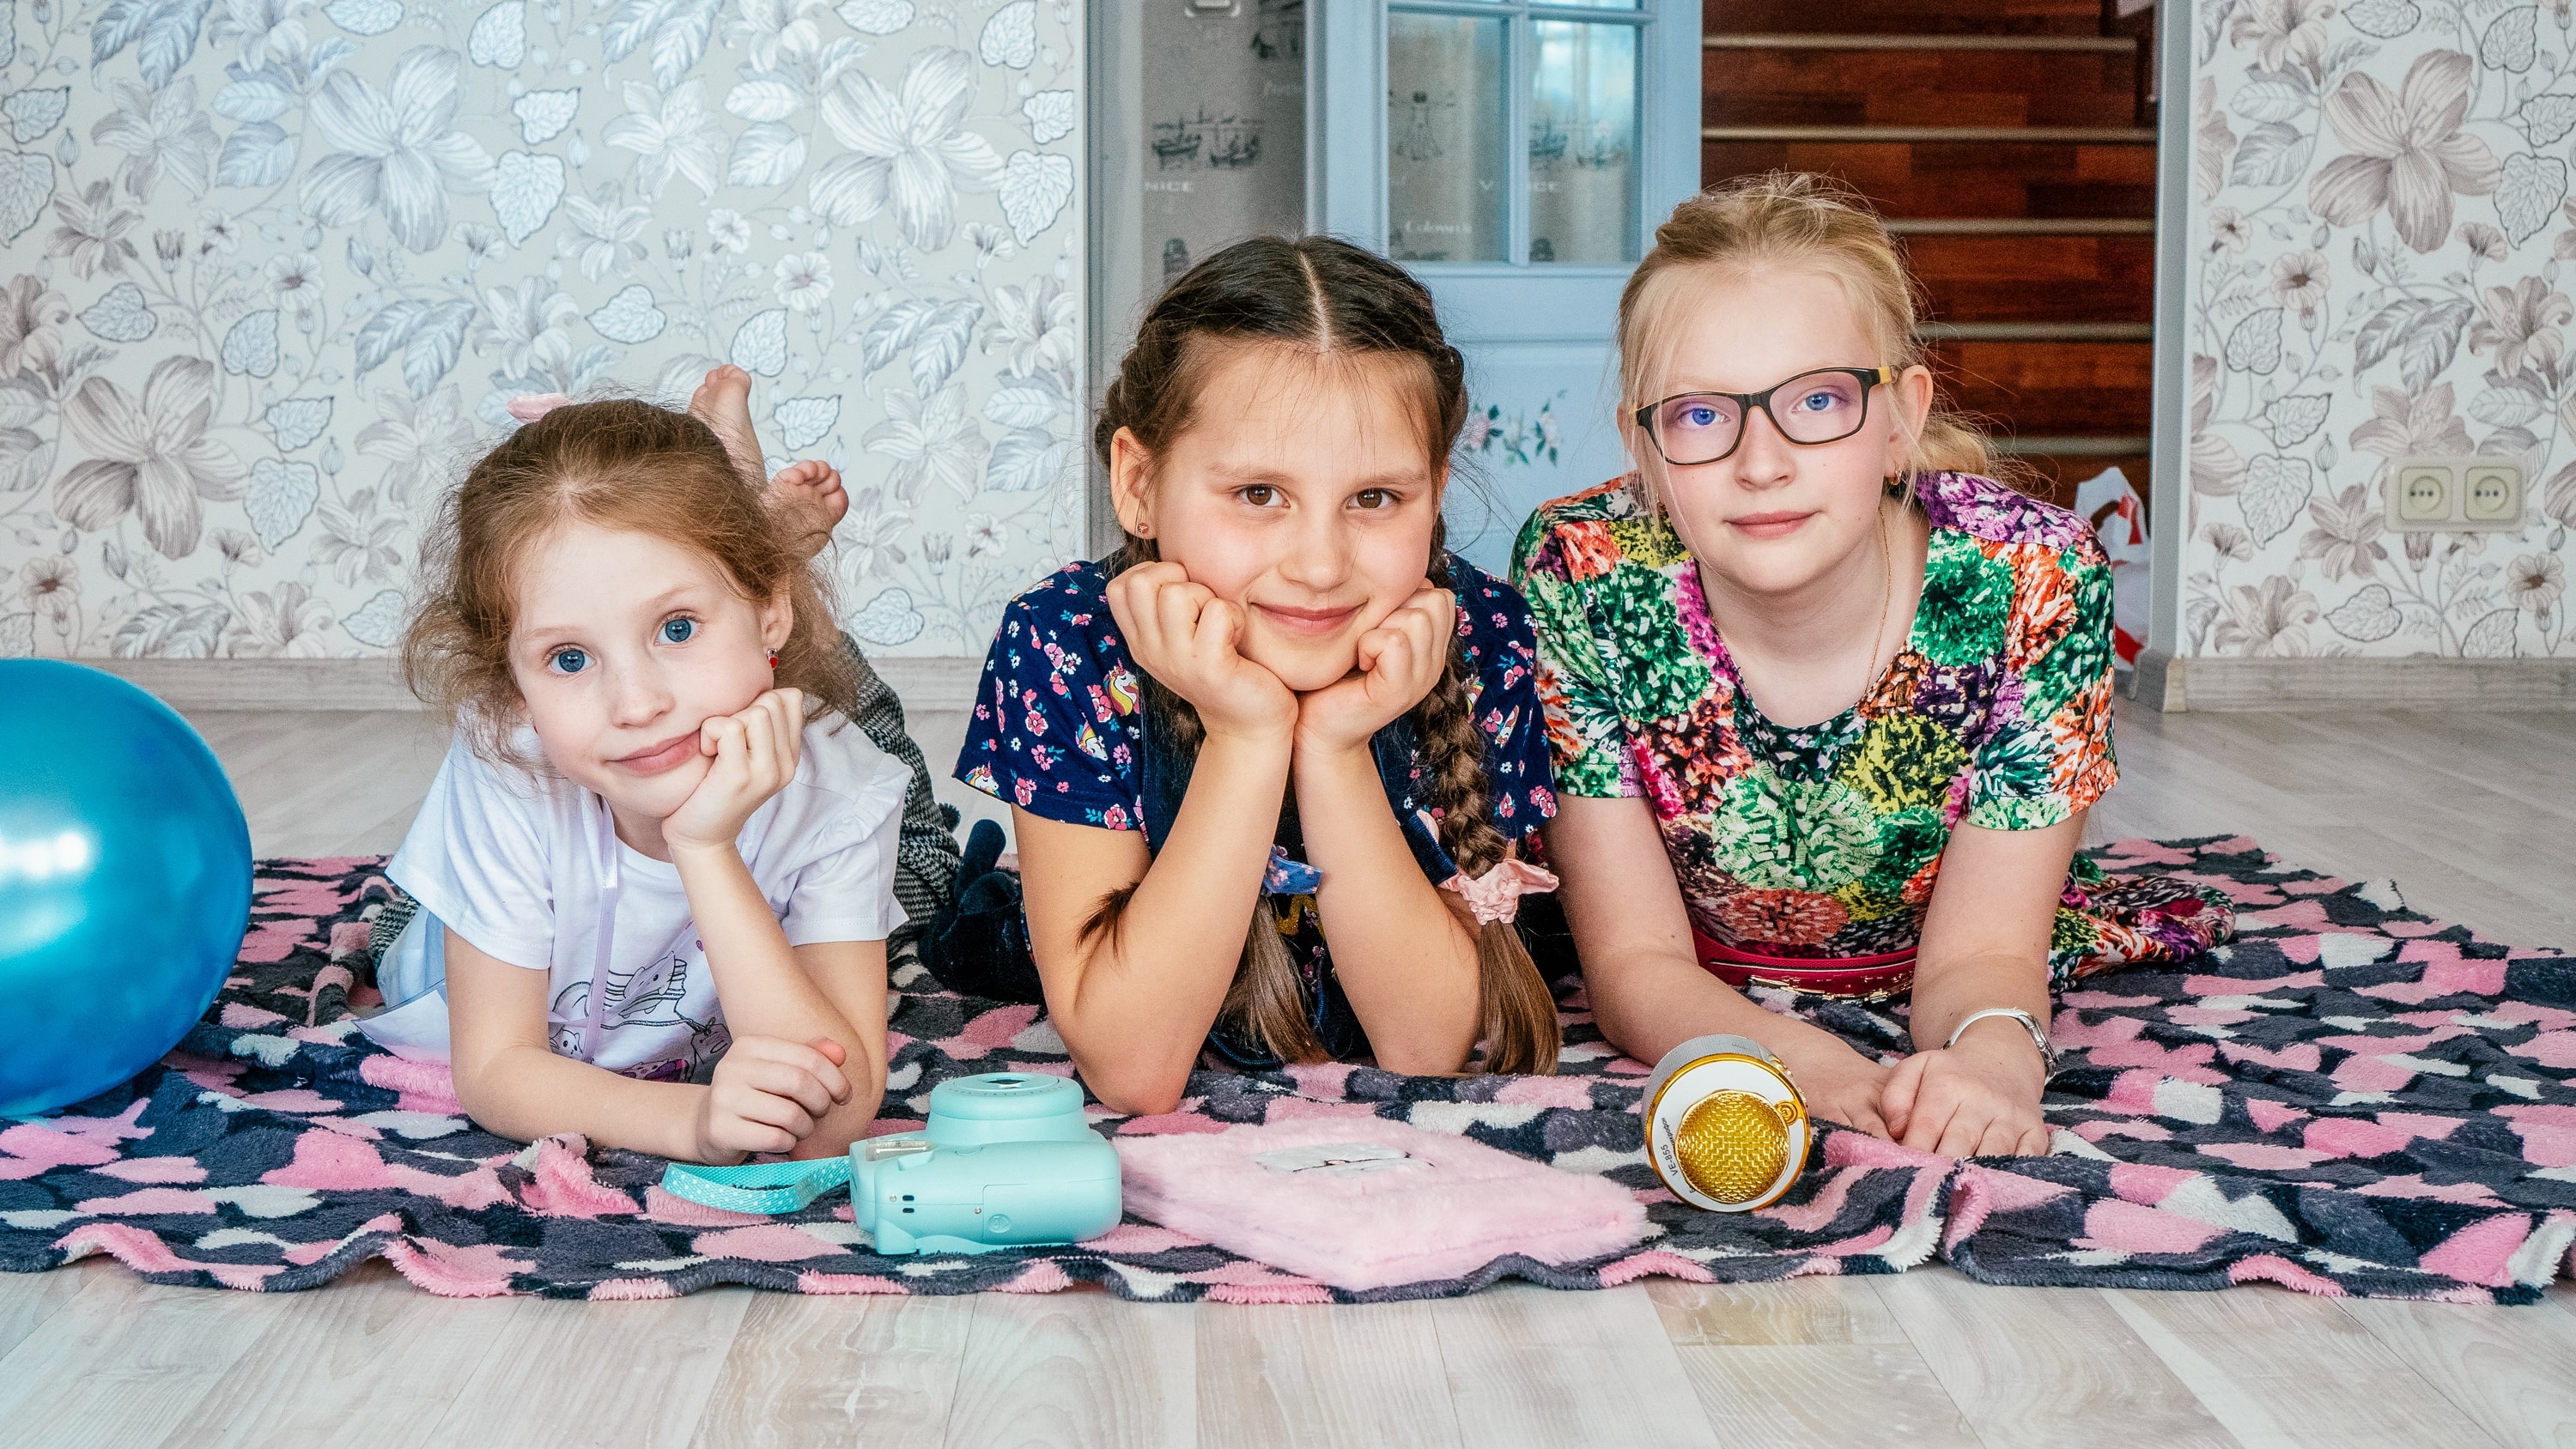 «Творческие каникулы для девочек Little Stars» – путевки в летний детский творческий лагерь 2023, Санкт-Петербург, д. Марьино – 3.